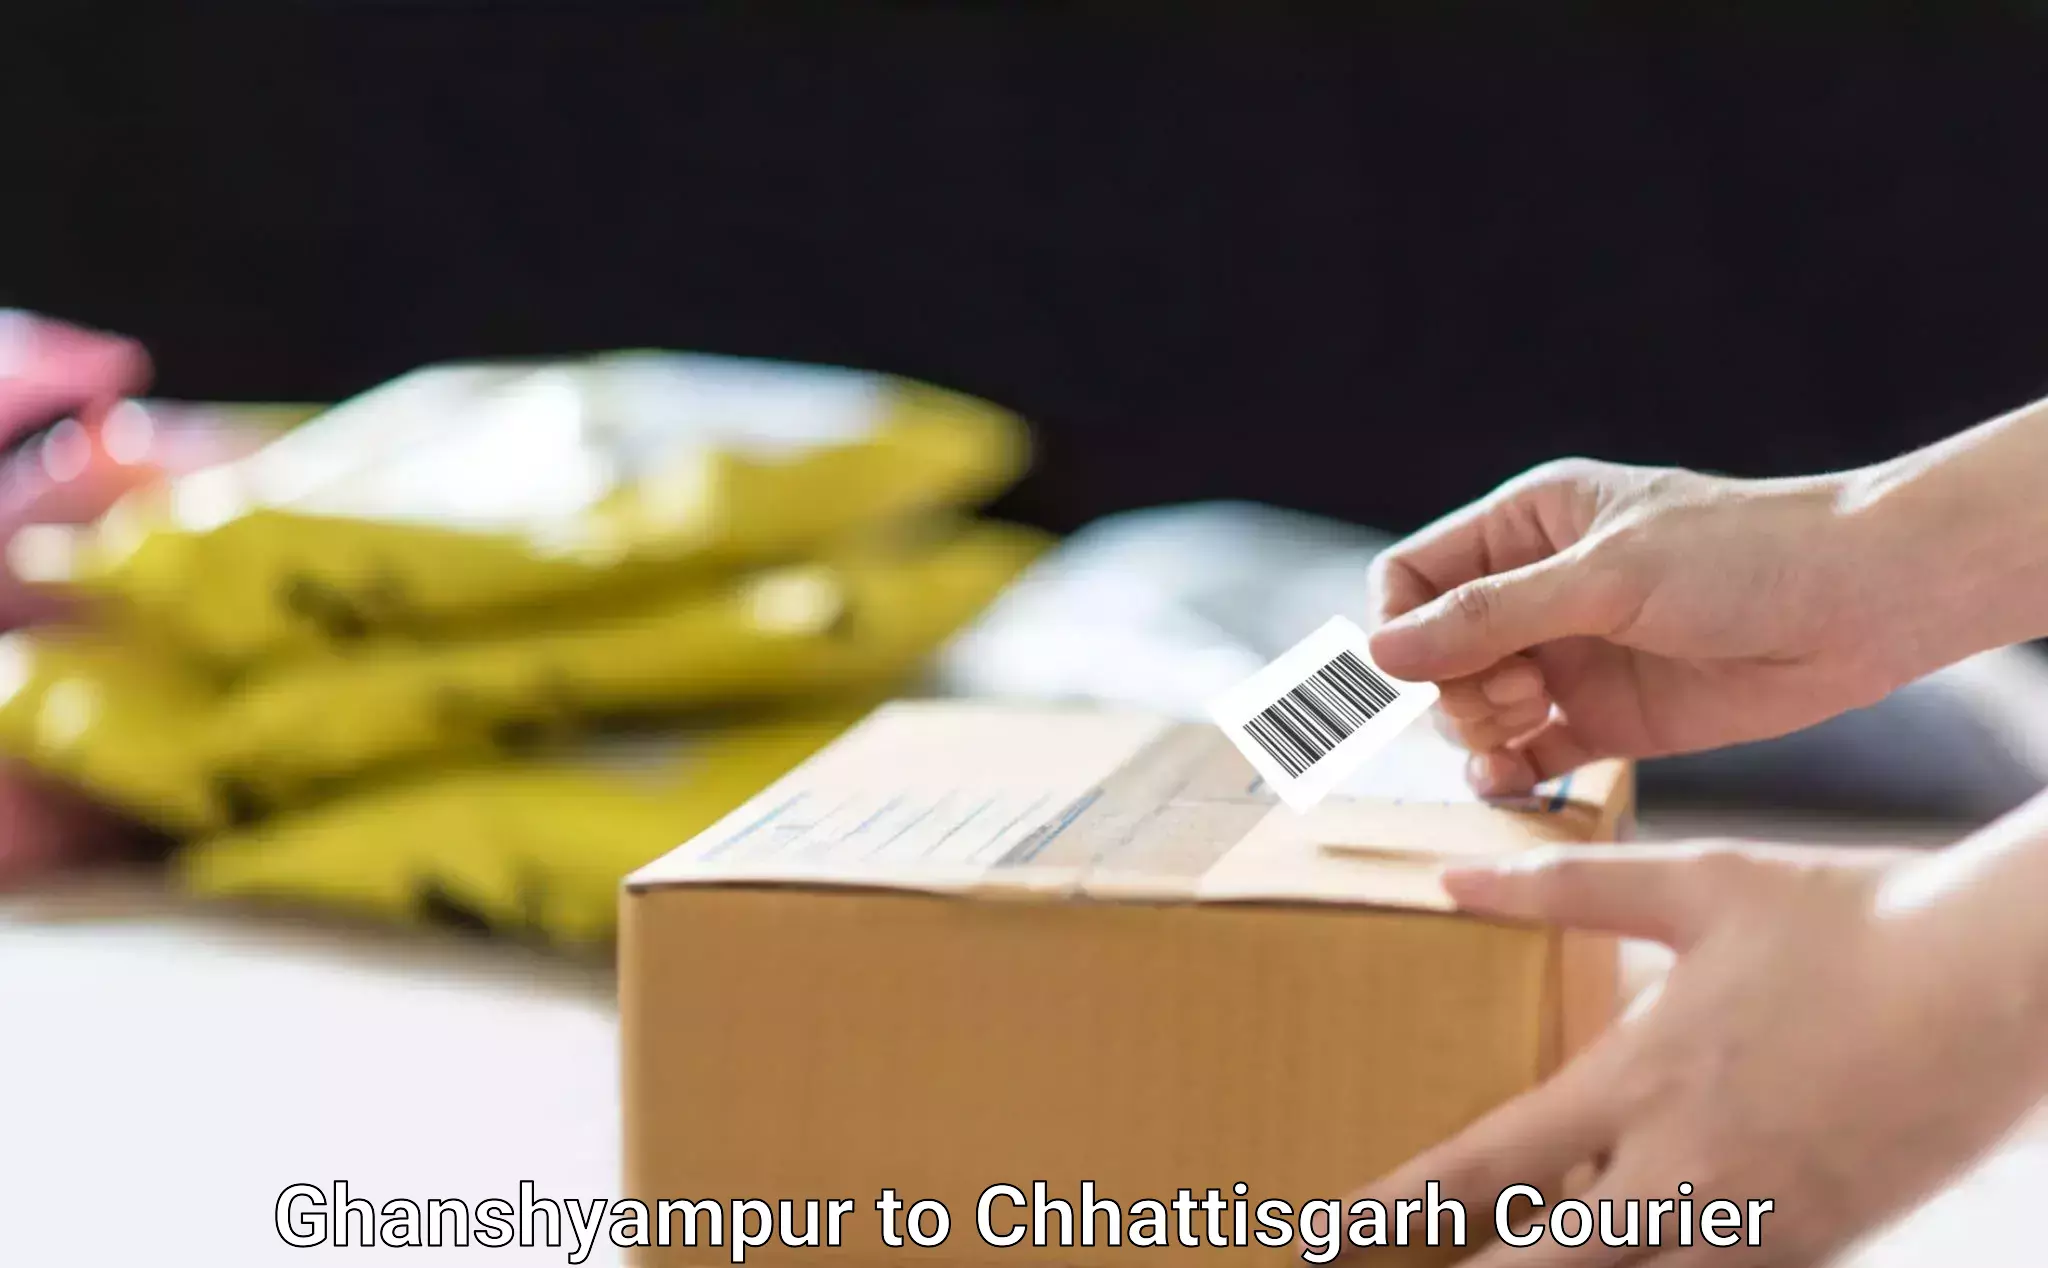 High-quality moving services Ghanshyampur to Raigarh Chhattisgarh